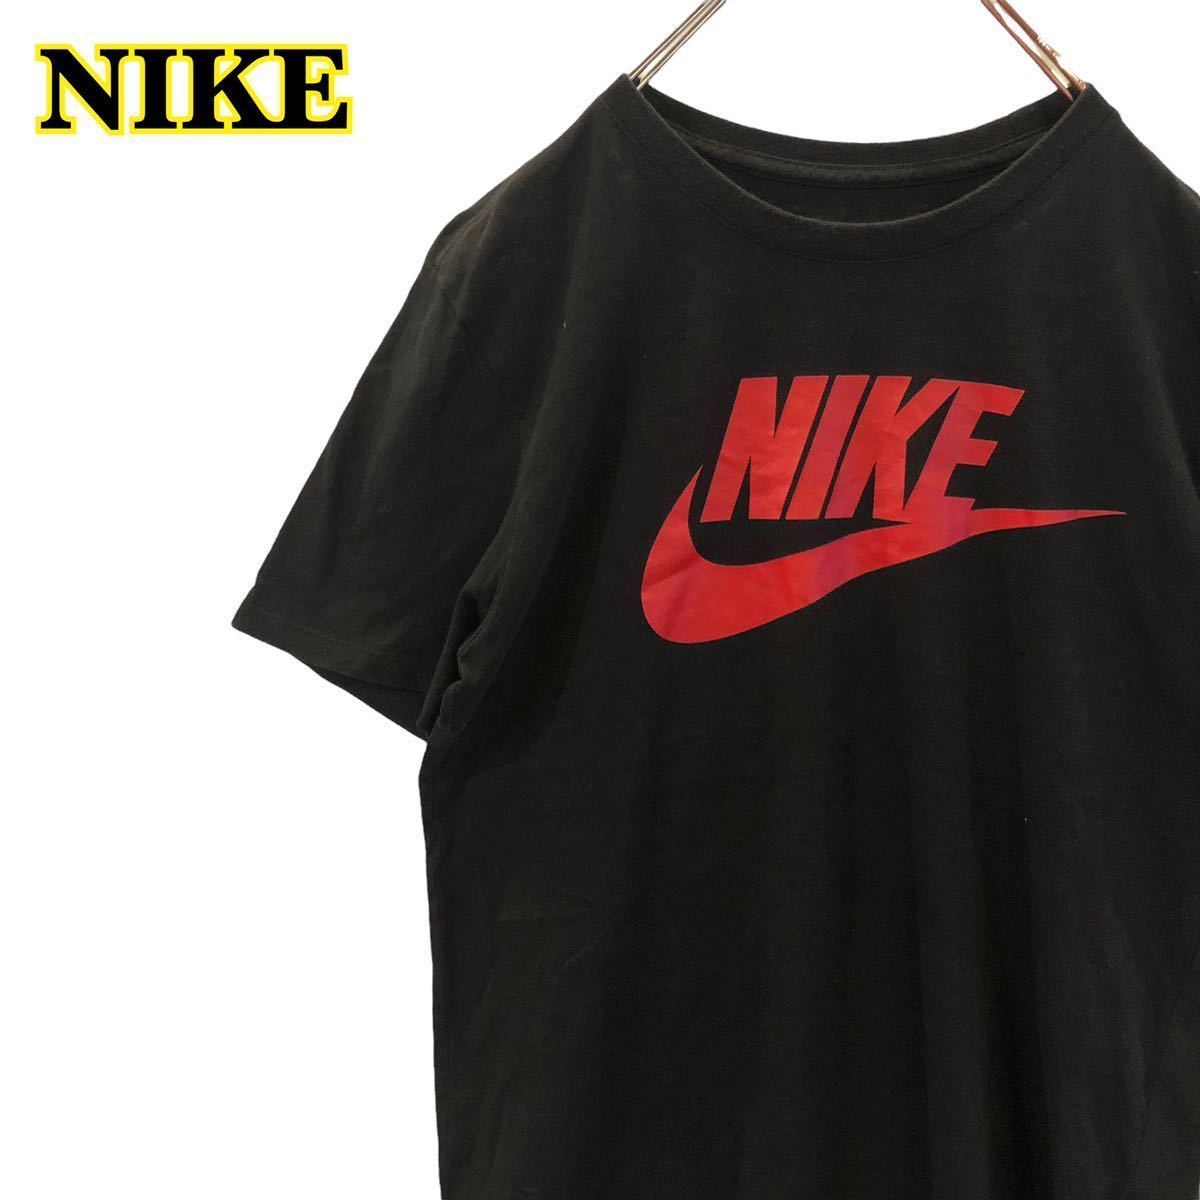 Nike ナイキ 半袖tシャツ プリントtシャツ 黒 レディース Mサイズ Ha1336 限定special Price